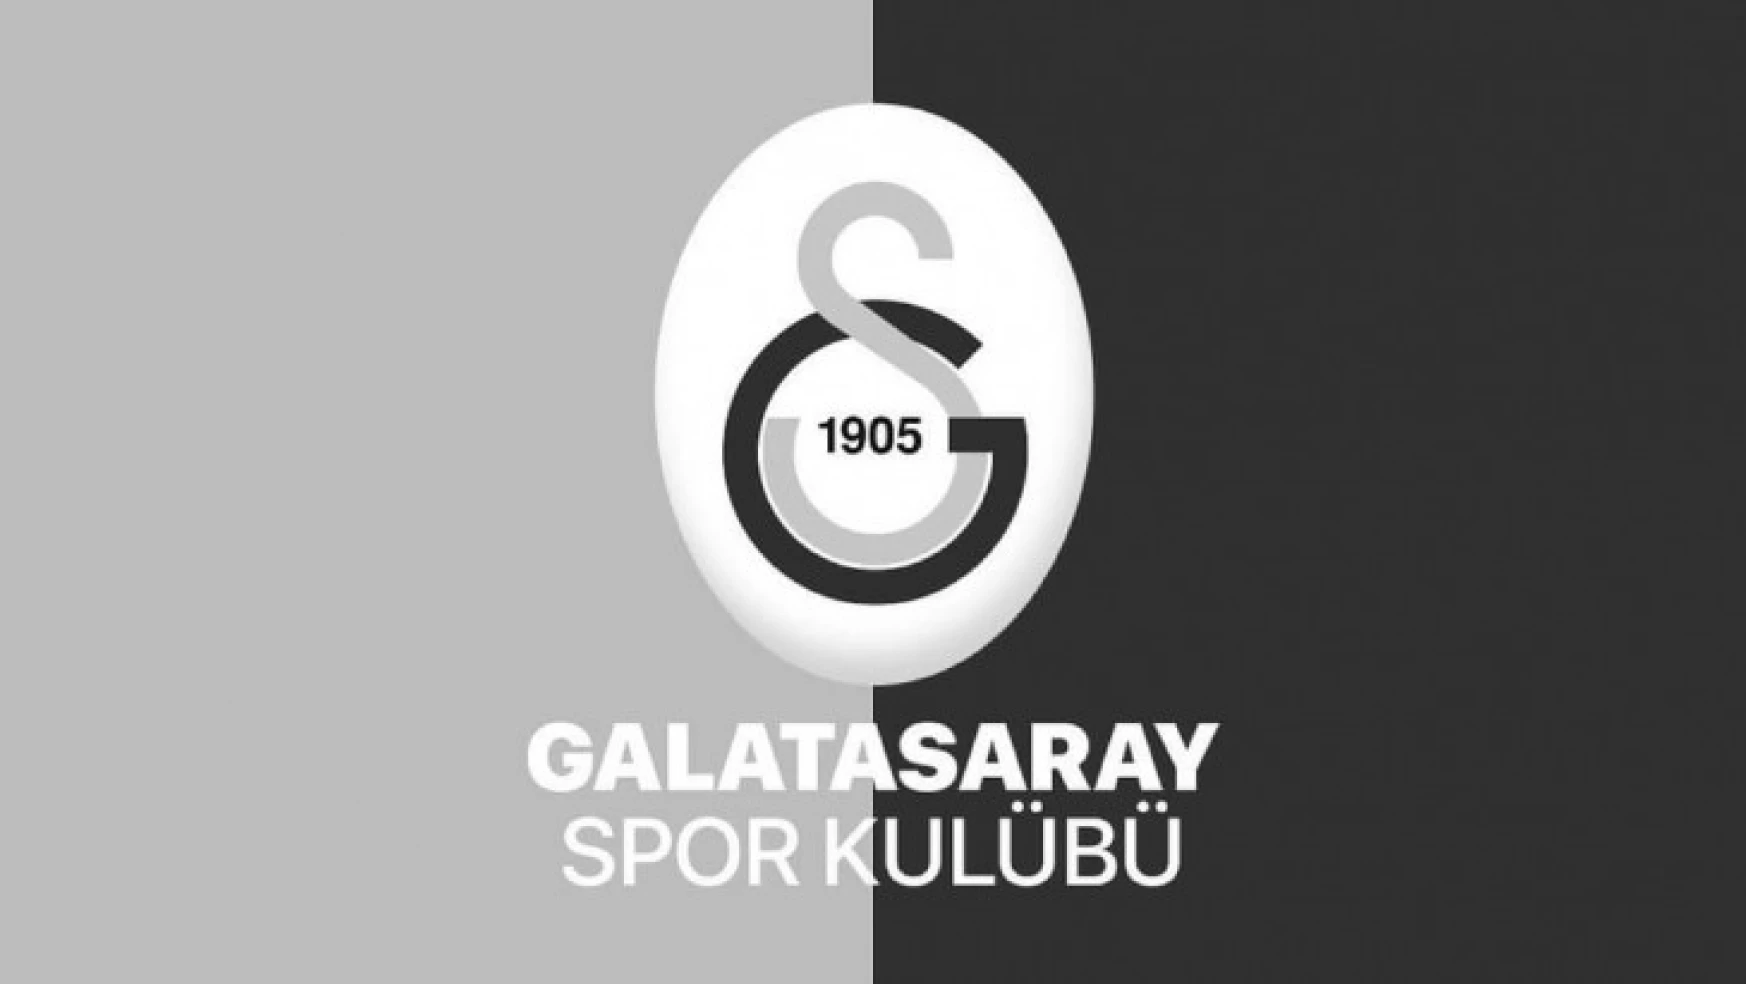 Galatasaray'dan taziye mesajı